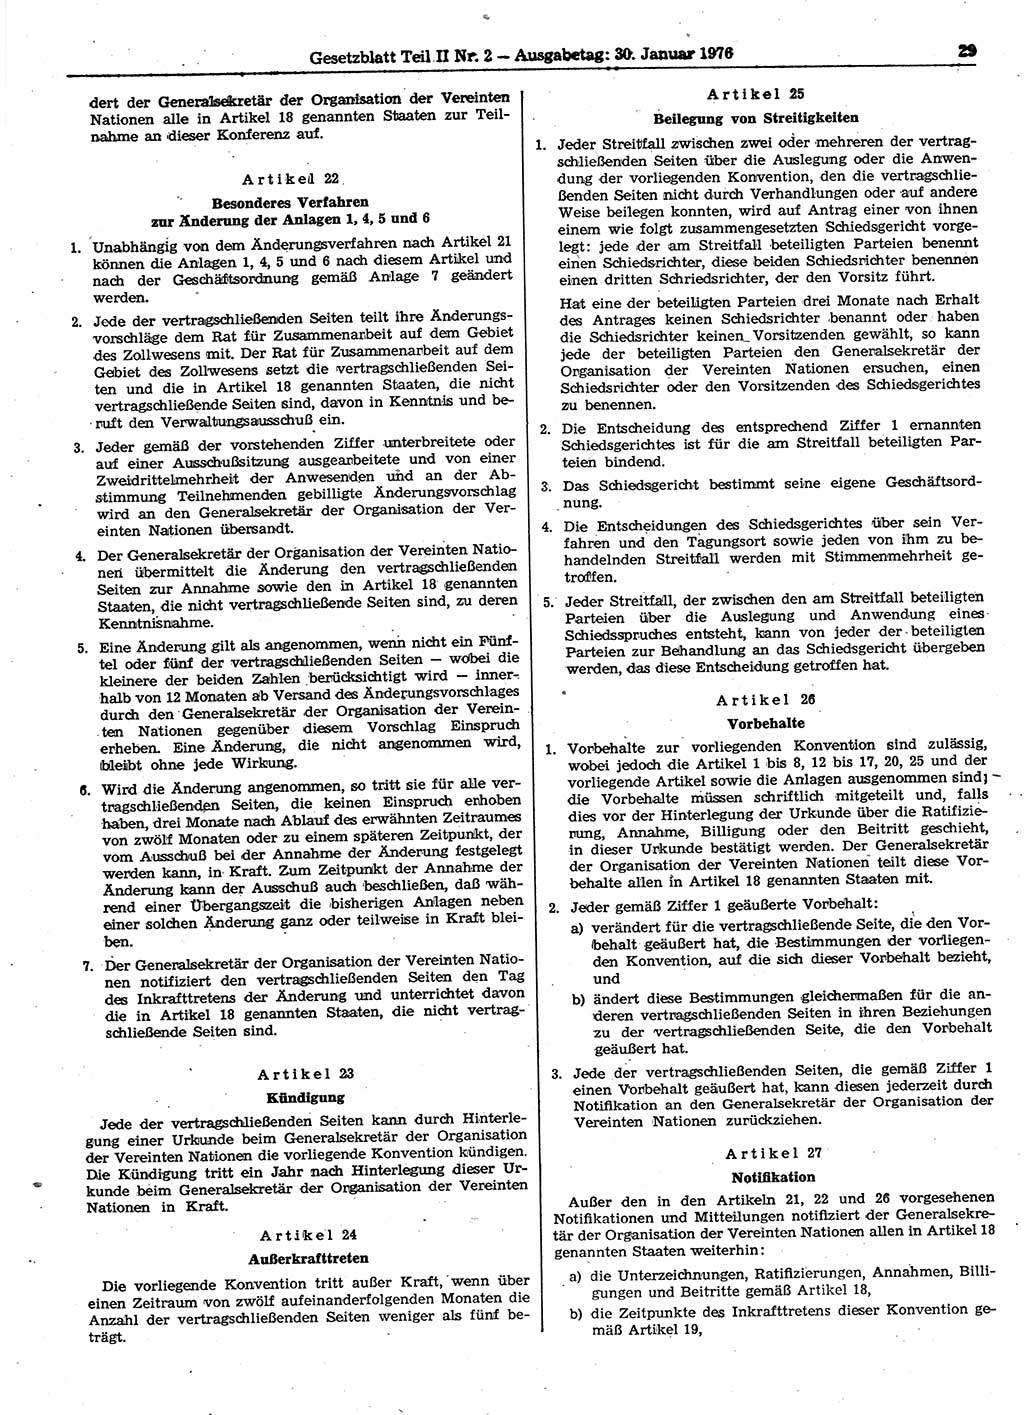 Gesetzblatt (GBl.) der Deutschen Demokratischen Republik (DDR) Teil ⅠⅠ 1976, Seite 29 (GBl. DDR ⅠⅠ 1976, S. 29)